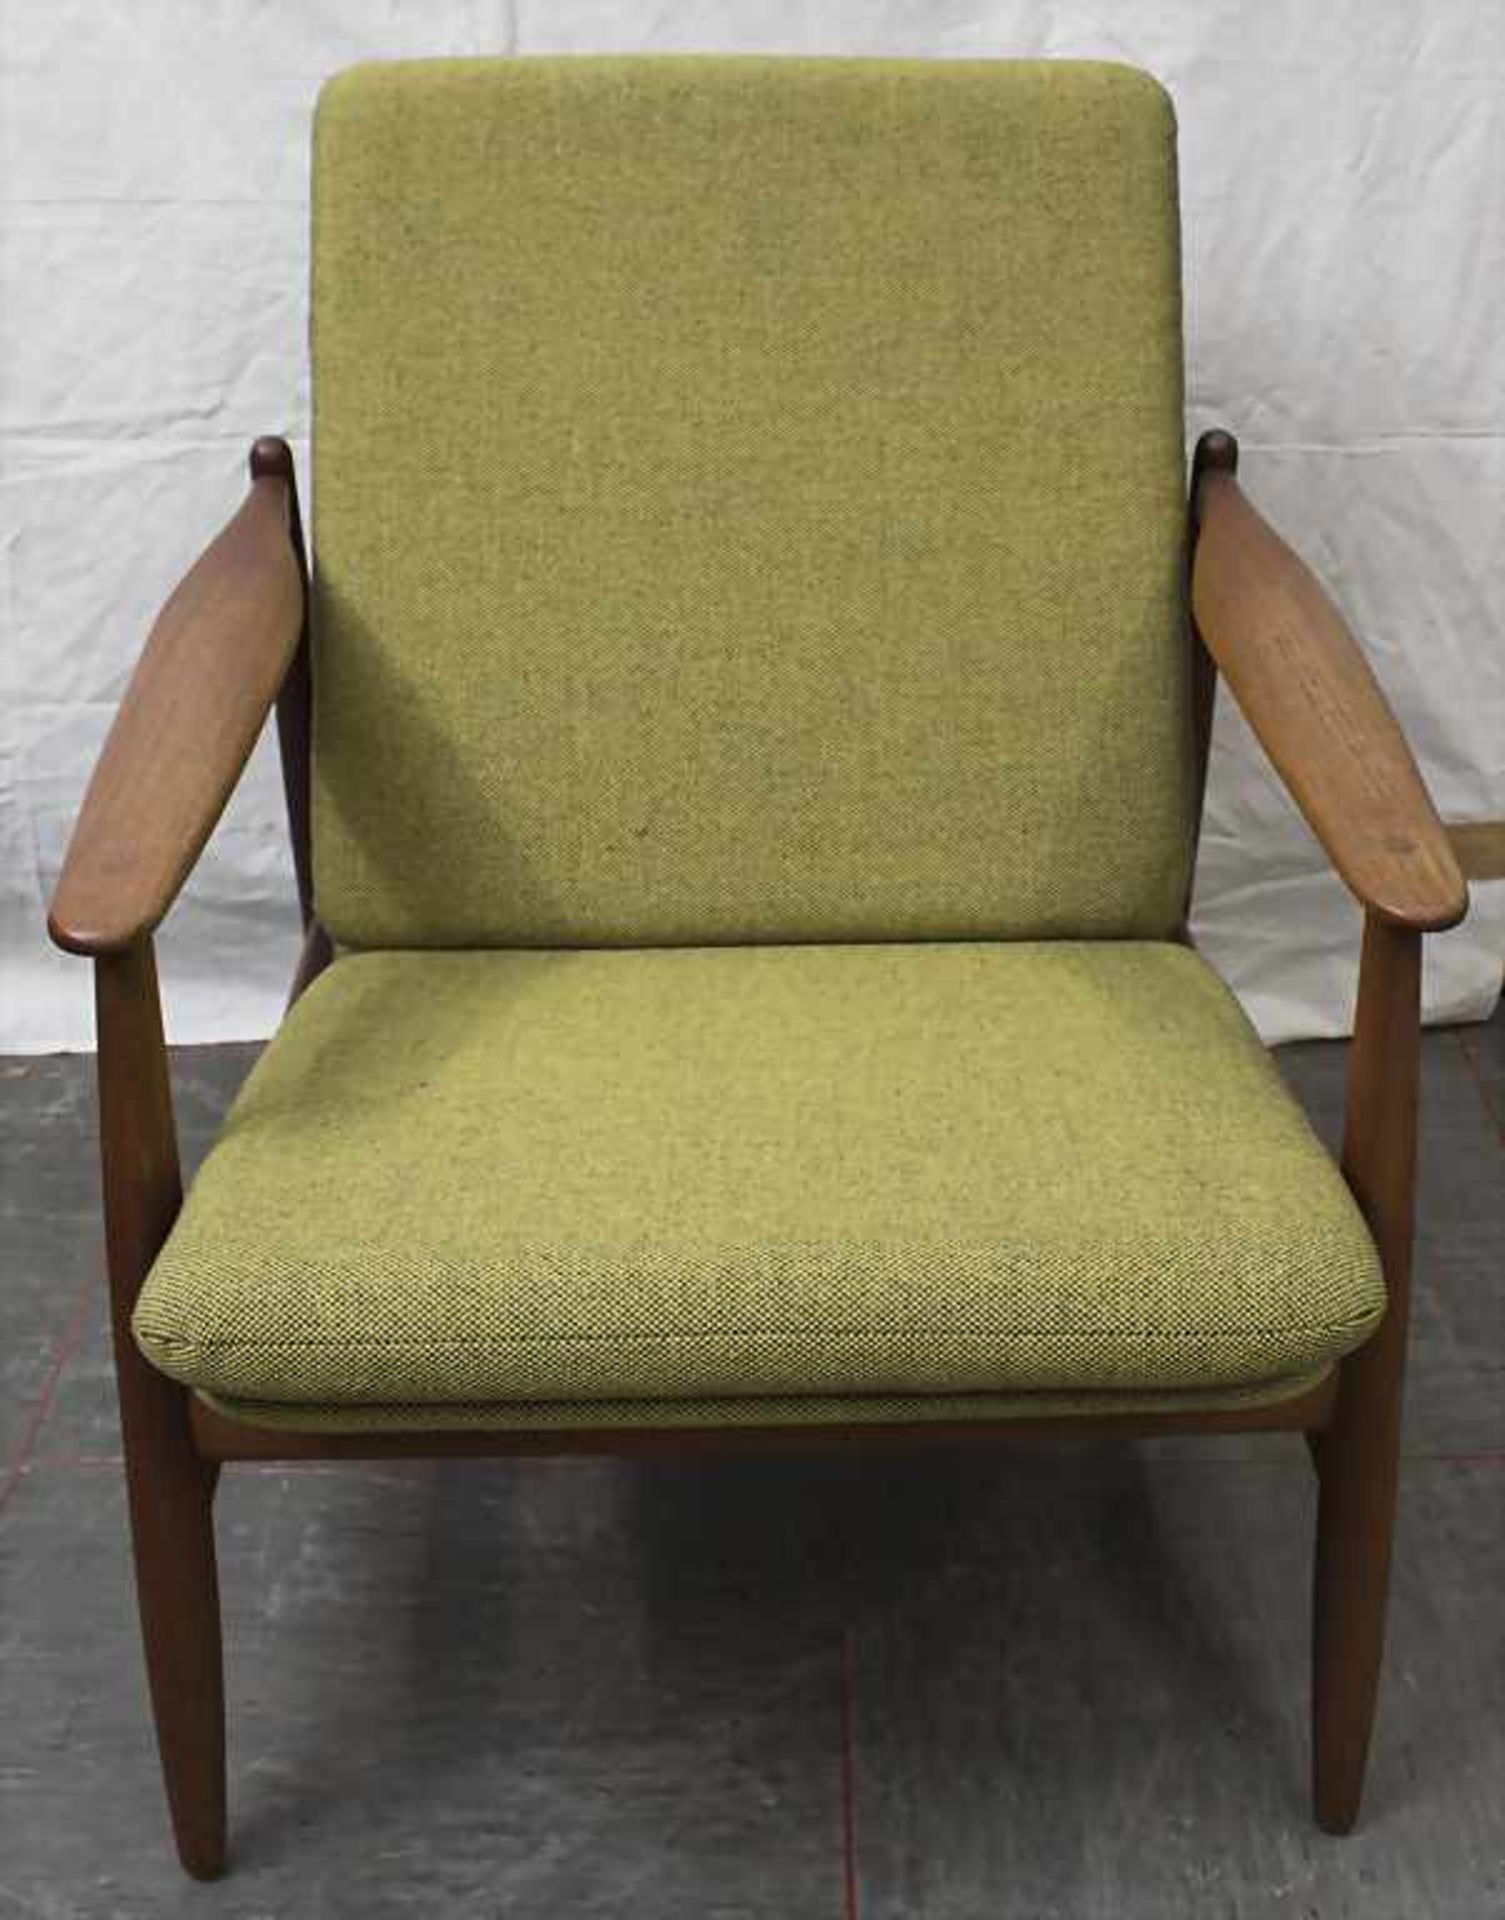 Sessel / An armchair, Hans Olsen, 1960er JahreMaterial: Teakholz, Polster mit olivgrünem Stoffbezug, - Image 3 of 4